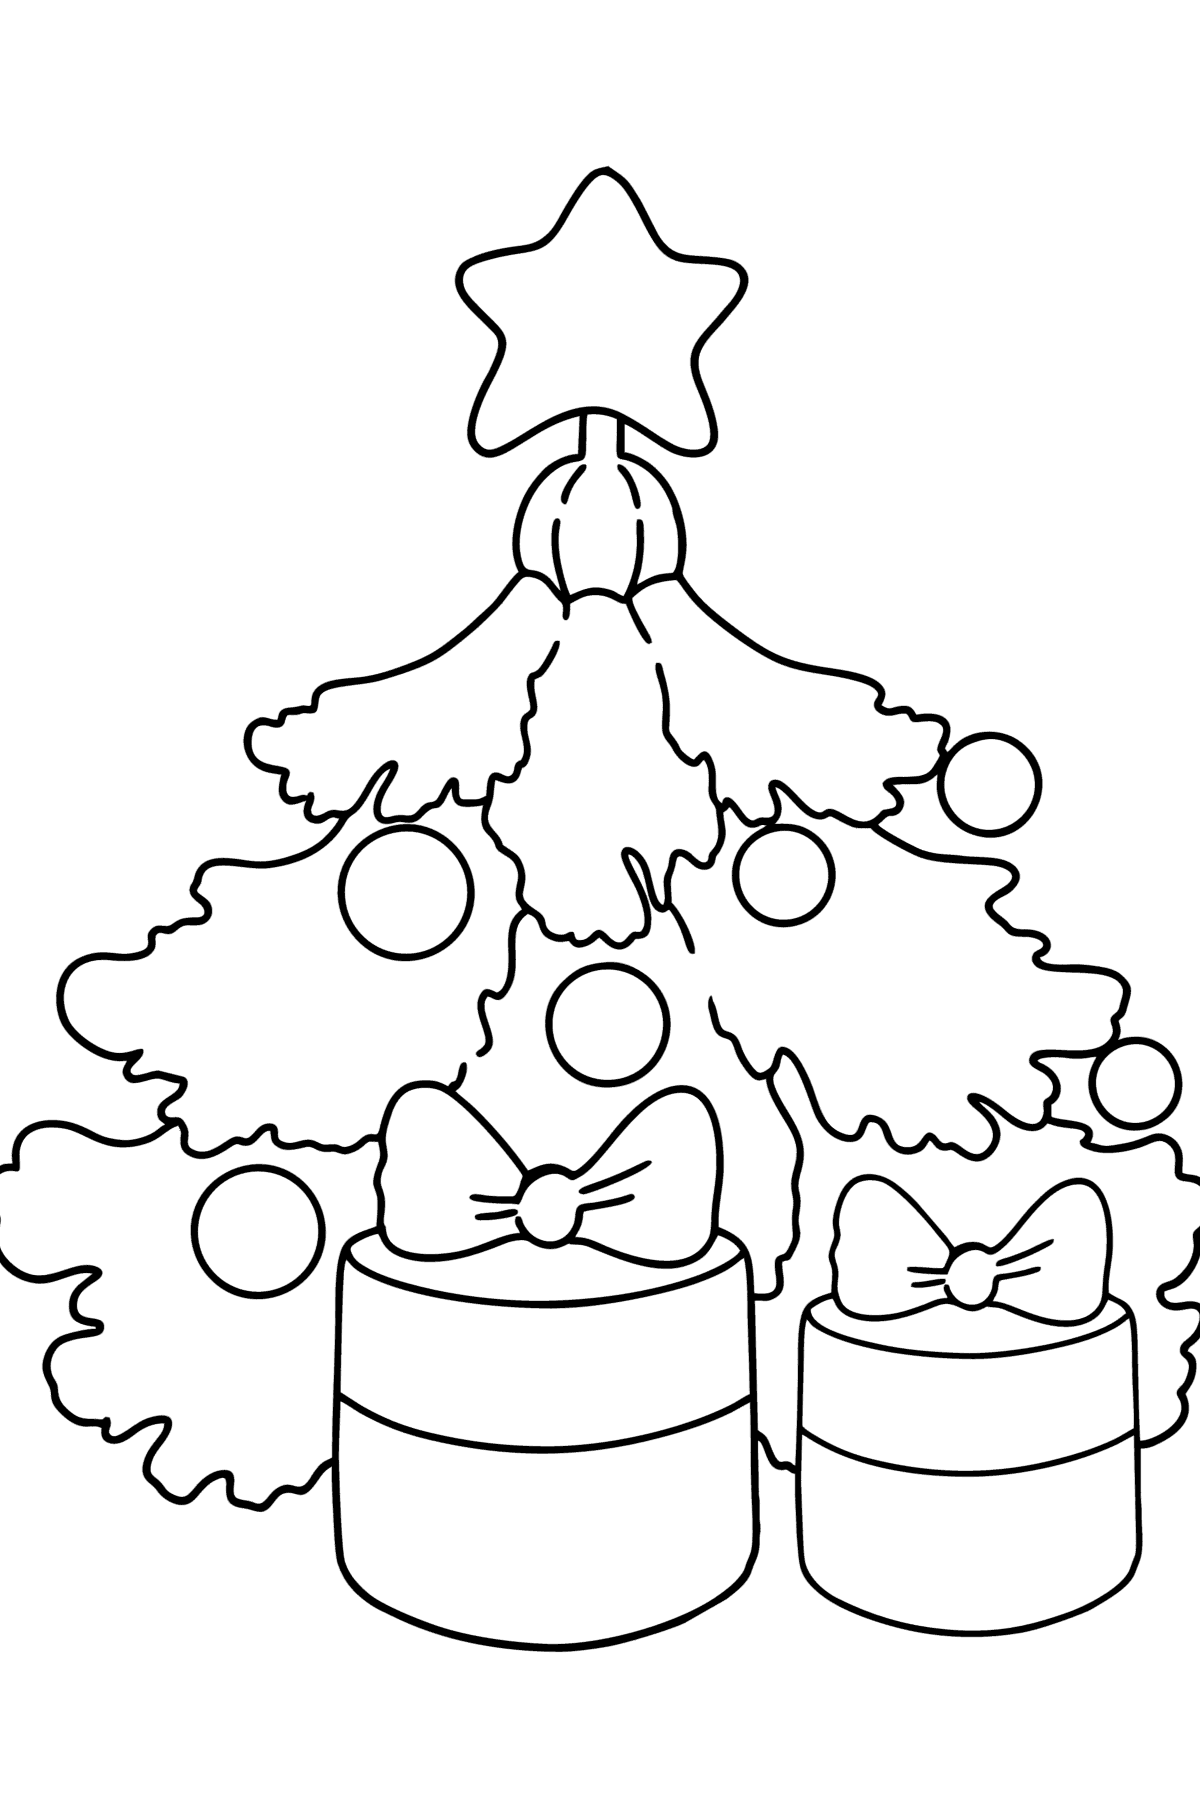 Ausmalbild Weihnachtsbaum und Geschenke - Malvorlagen für Kinder